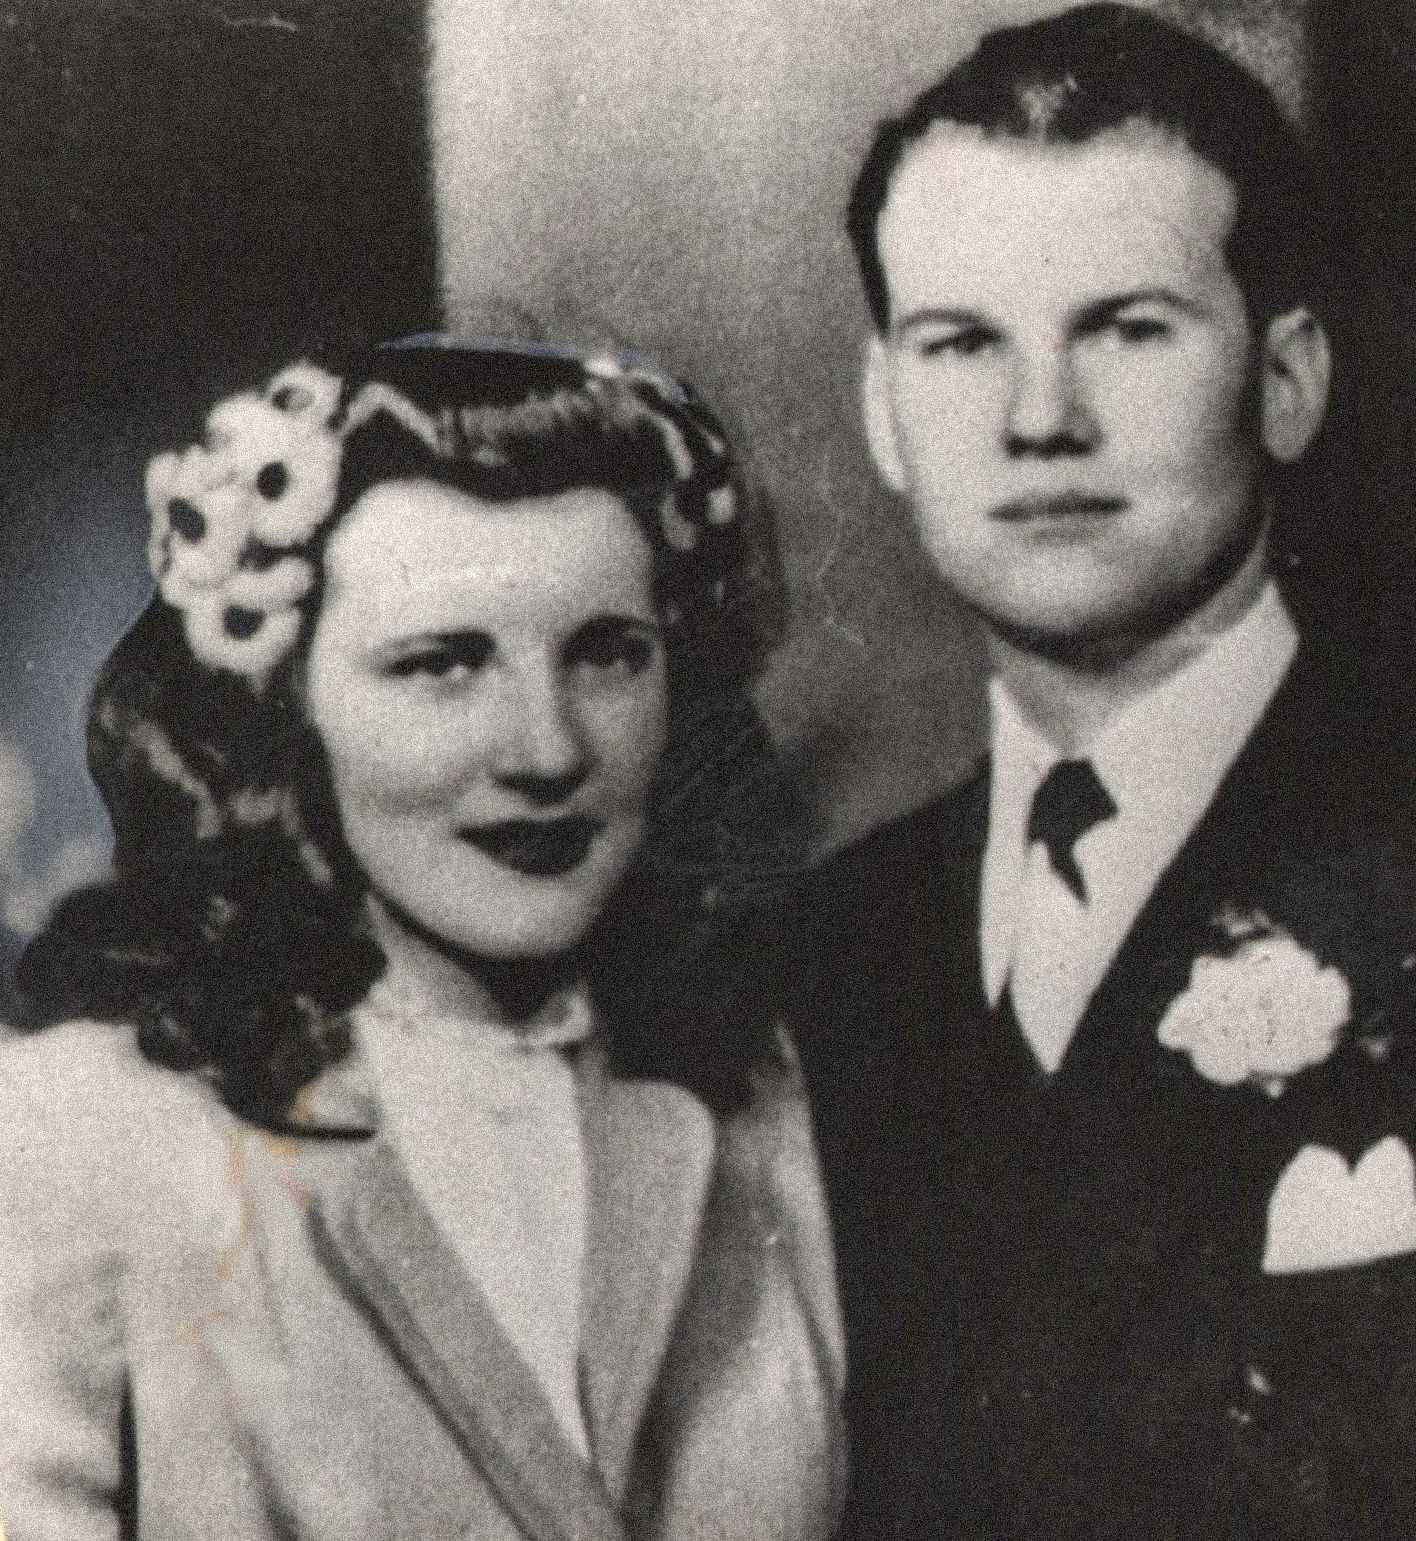 În imagine sunt Sam și Marilyn Sheppard, un cuplu tânăr și aparent fericit. Cei doi s-au căsătorit pe 21 februarie 1945 și au avut împreună un copil, Sam Reese Sheppard. Marilyn era însărcinată cu al doilea copil în momentul uciderii ei.